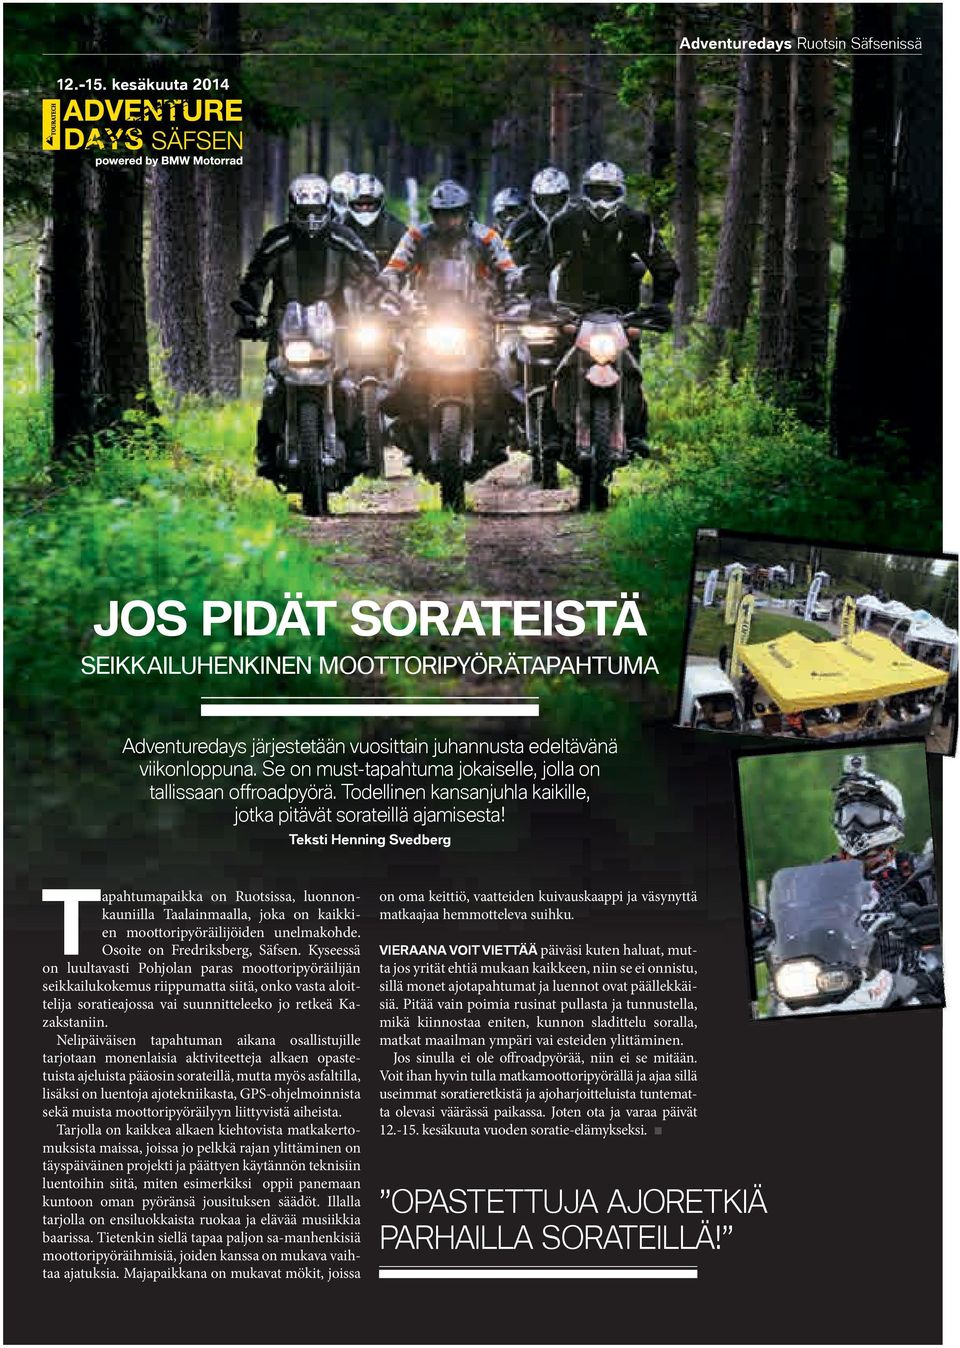 Teksti Henning Svedberg Tapahtumapaikka on Ruotsissa, luonnonkauniilla Taalainmaalla, joka on kaikkien moottoripyöräilijöiden unelmakohde. Osoite on Fredriksberg, Säfsen.